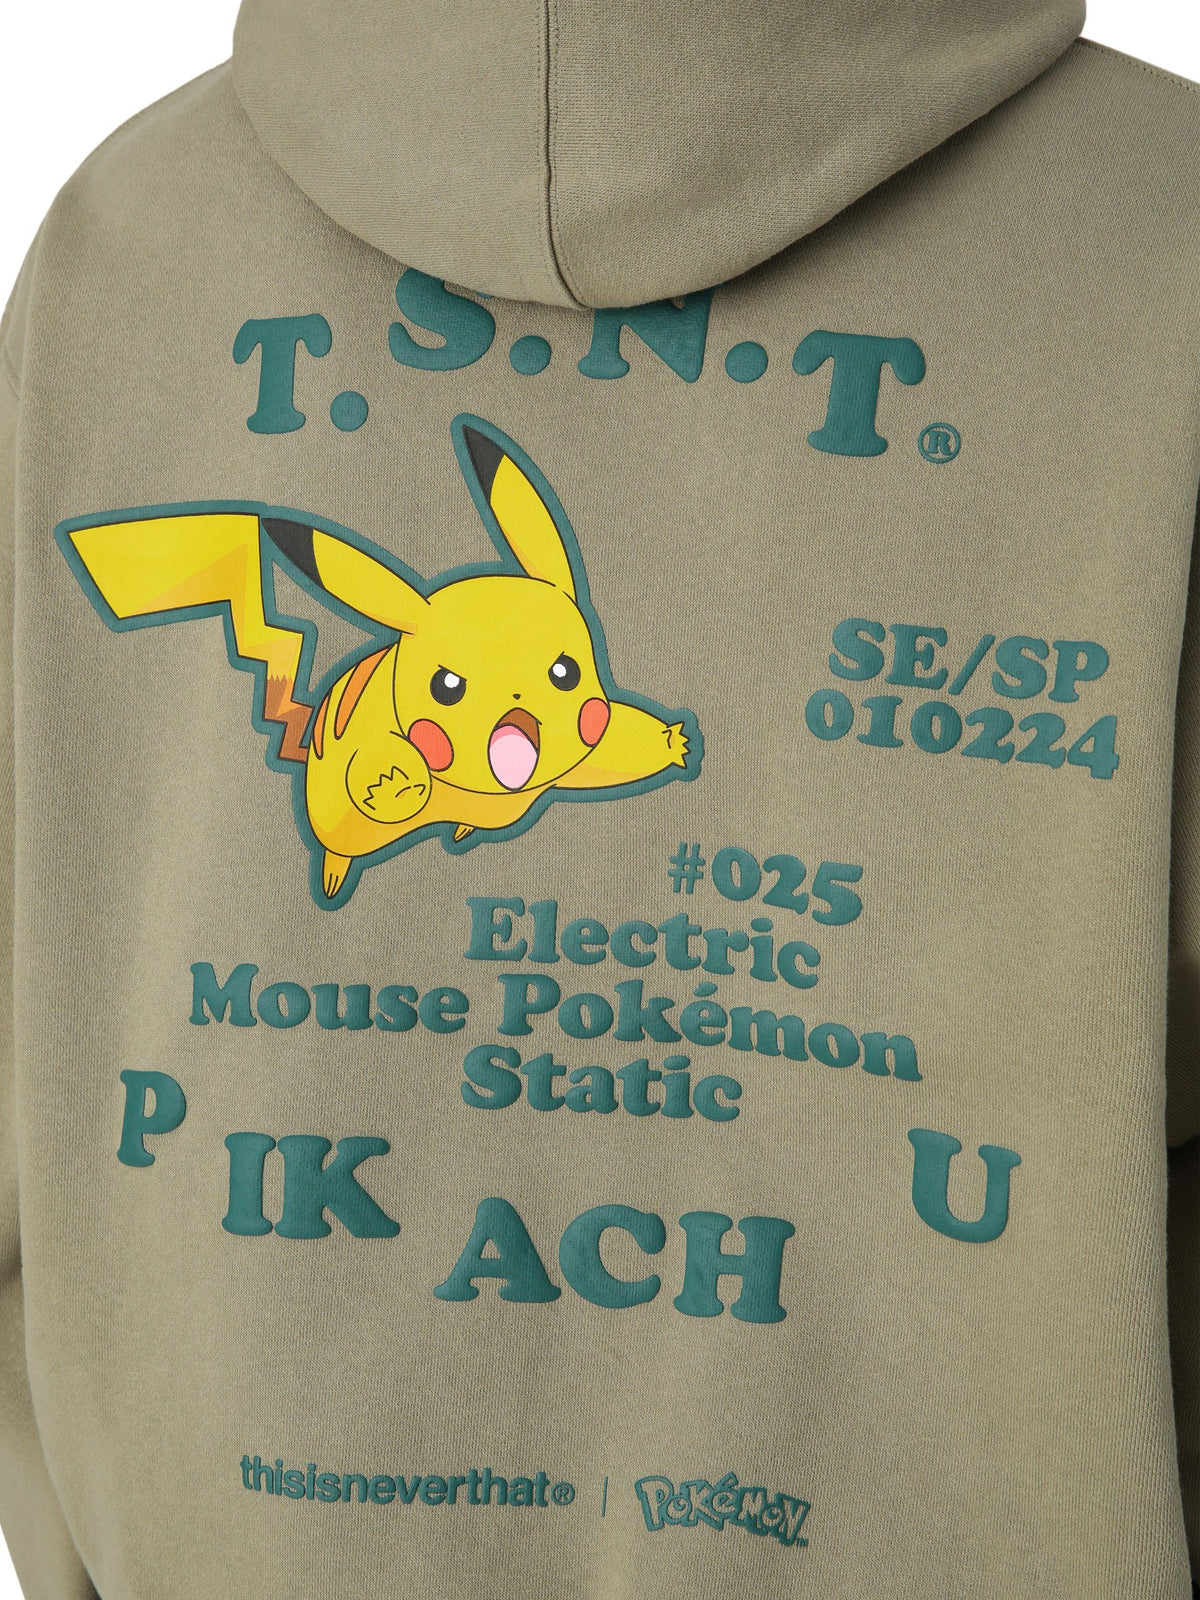 Pokemon Pikachu Hooded Sweatshirt Sweatshirts 